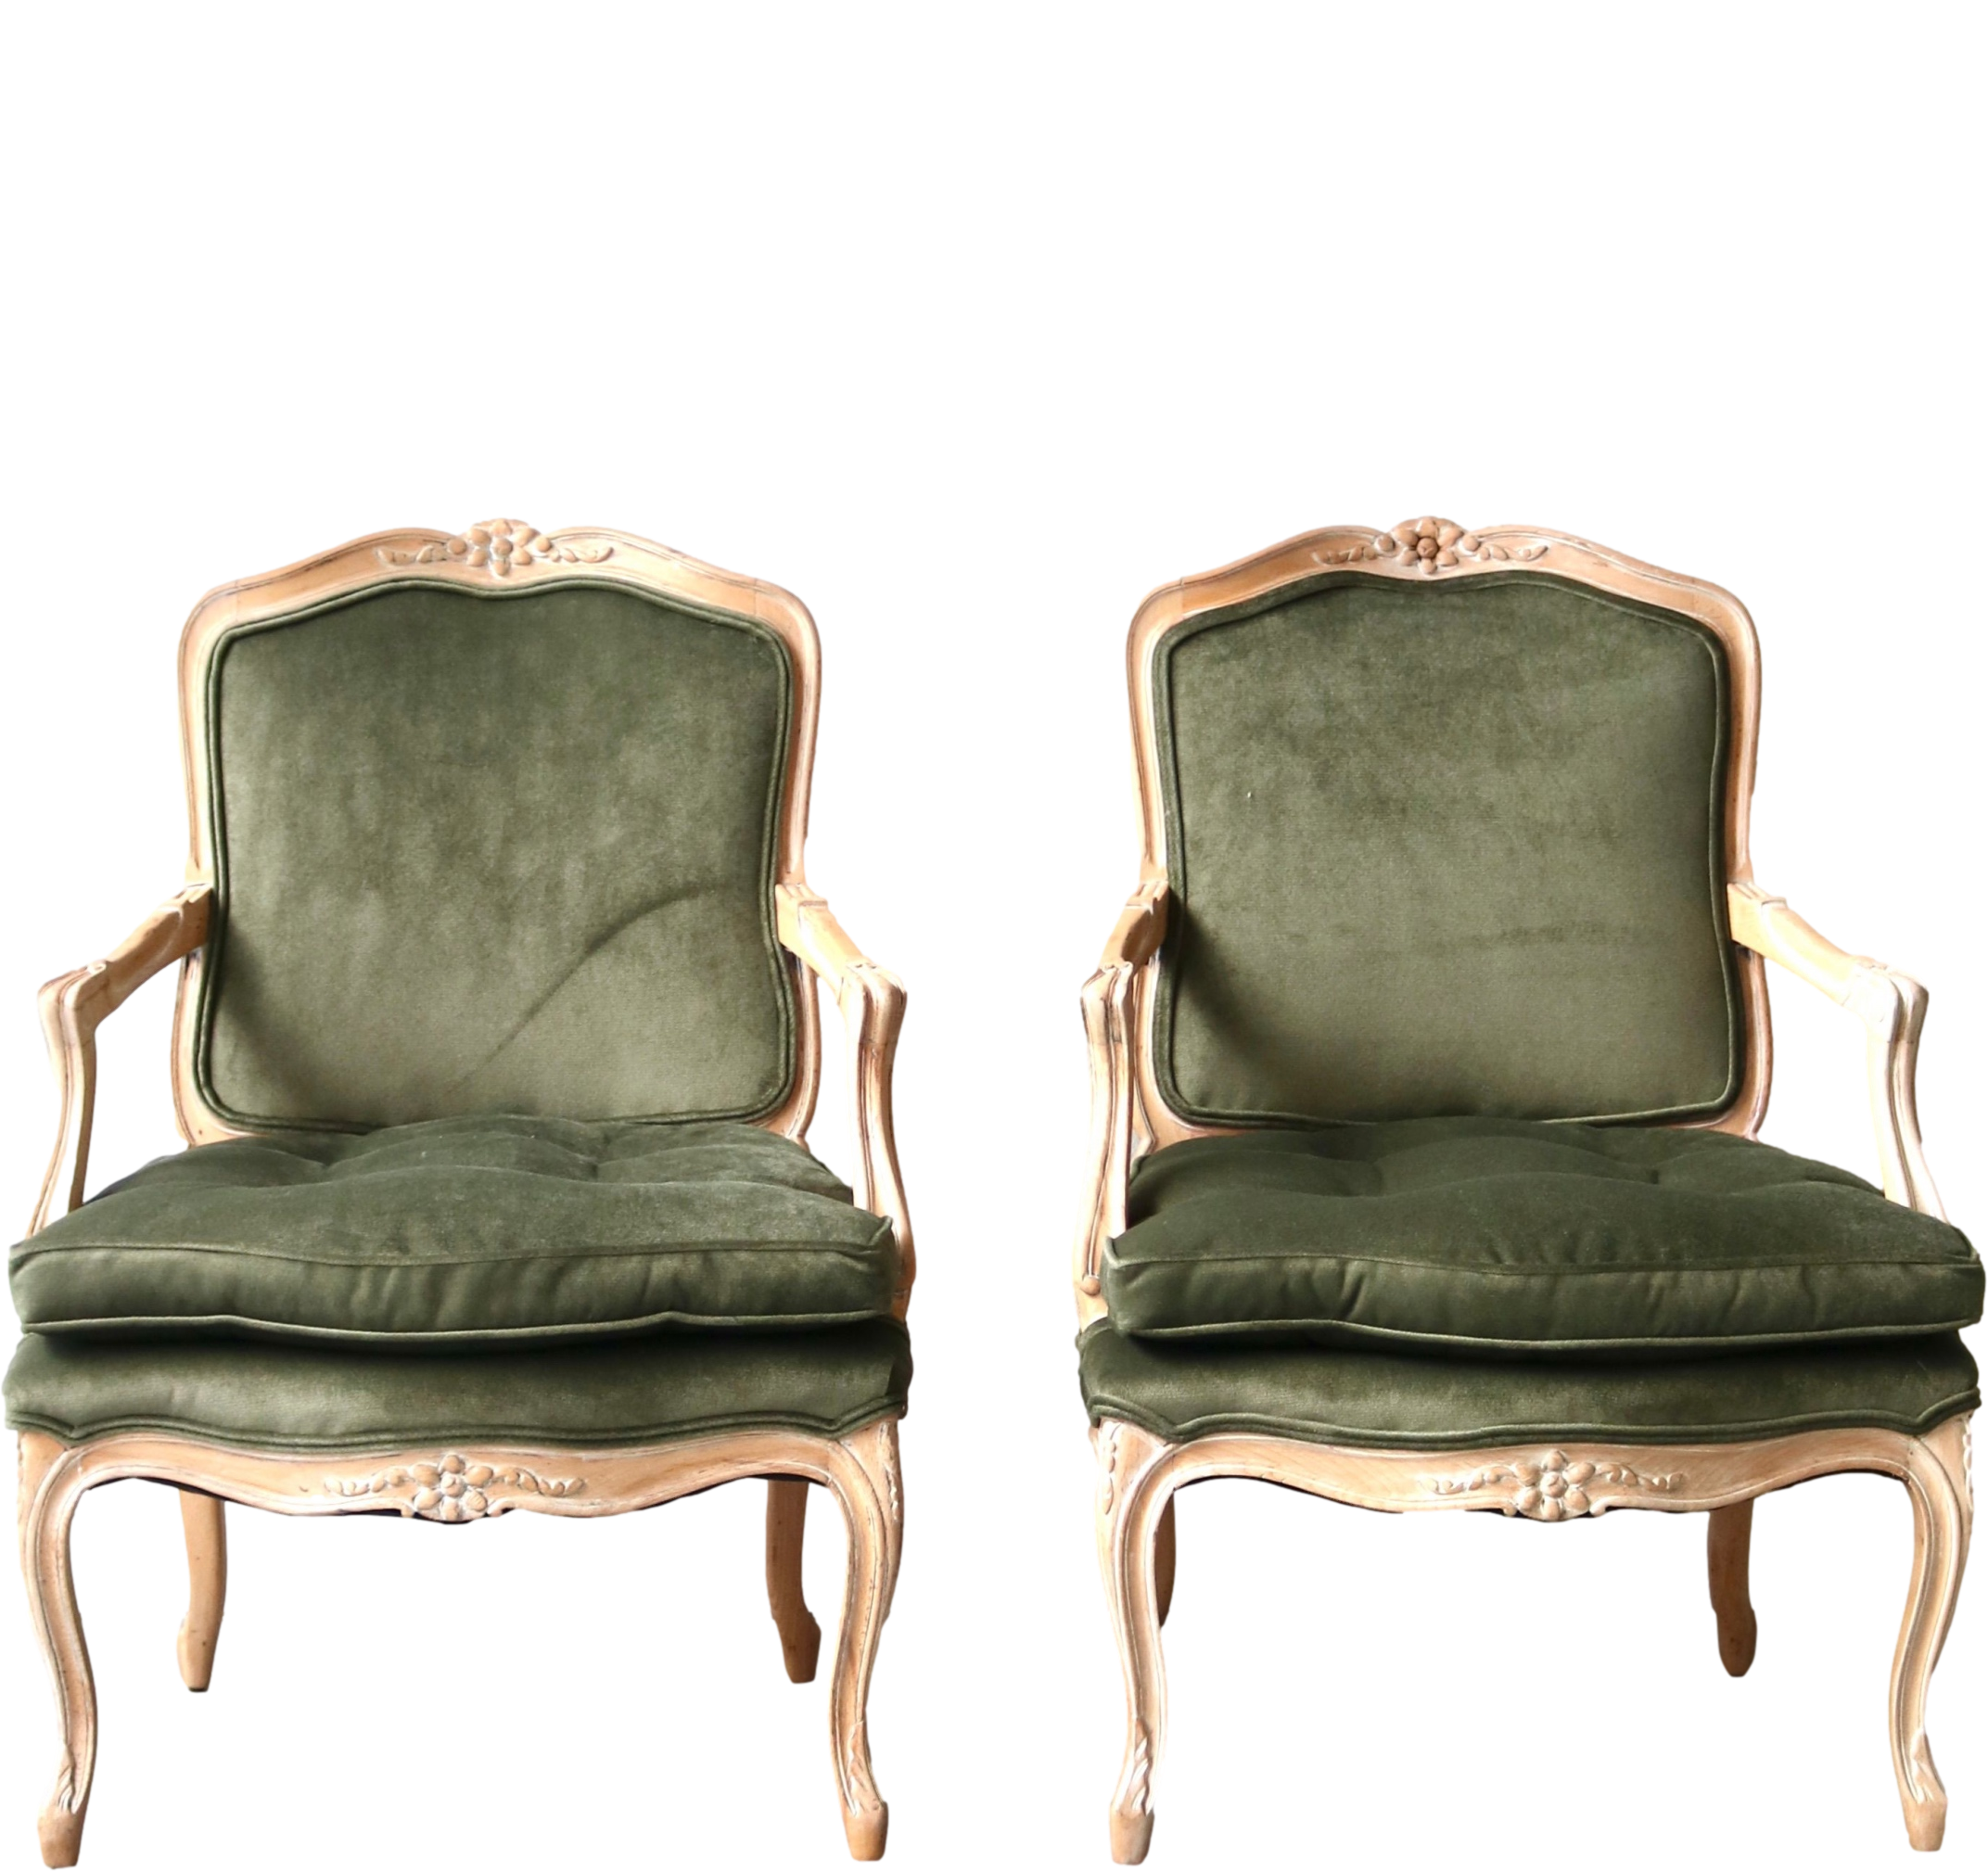  Upholstered velvet green chair rentals 